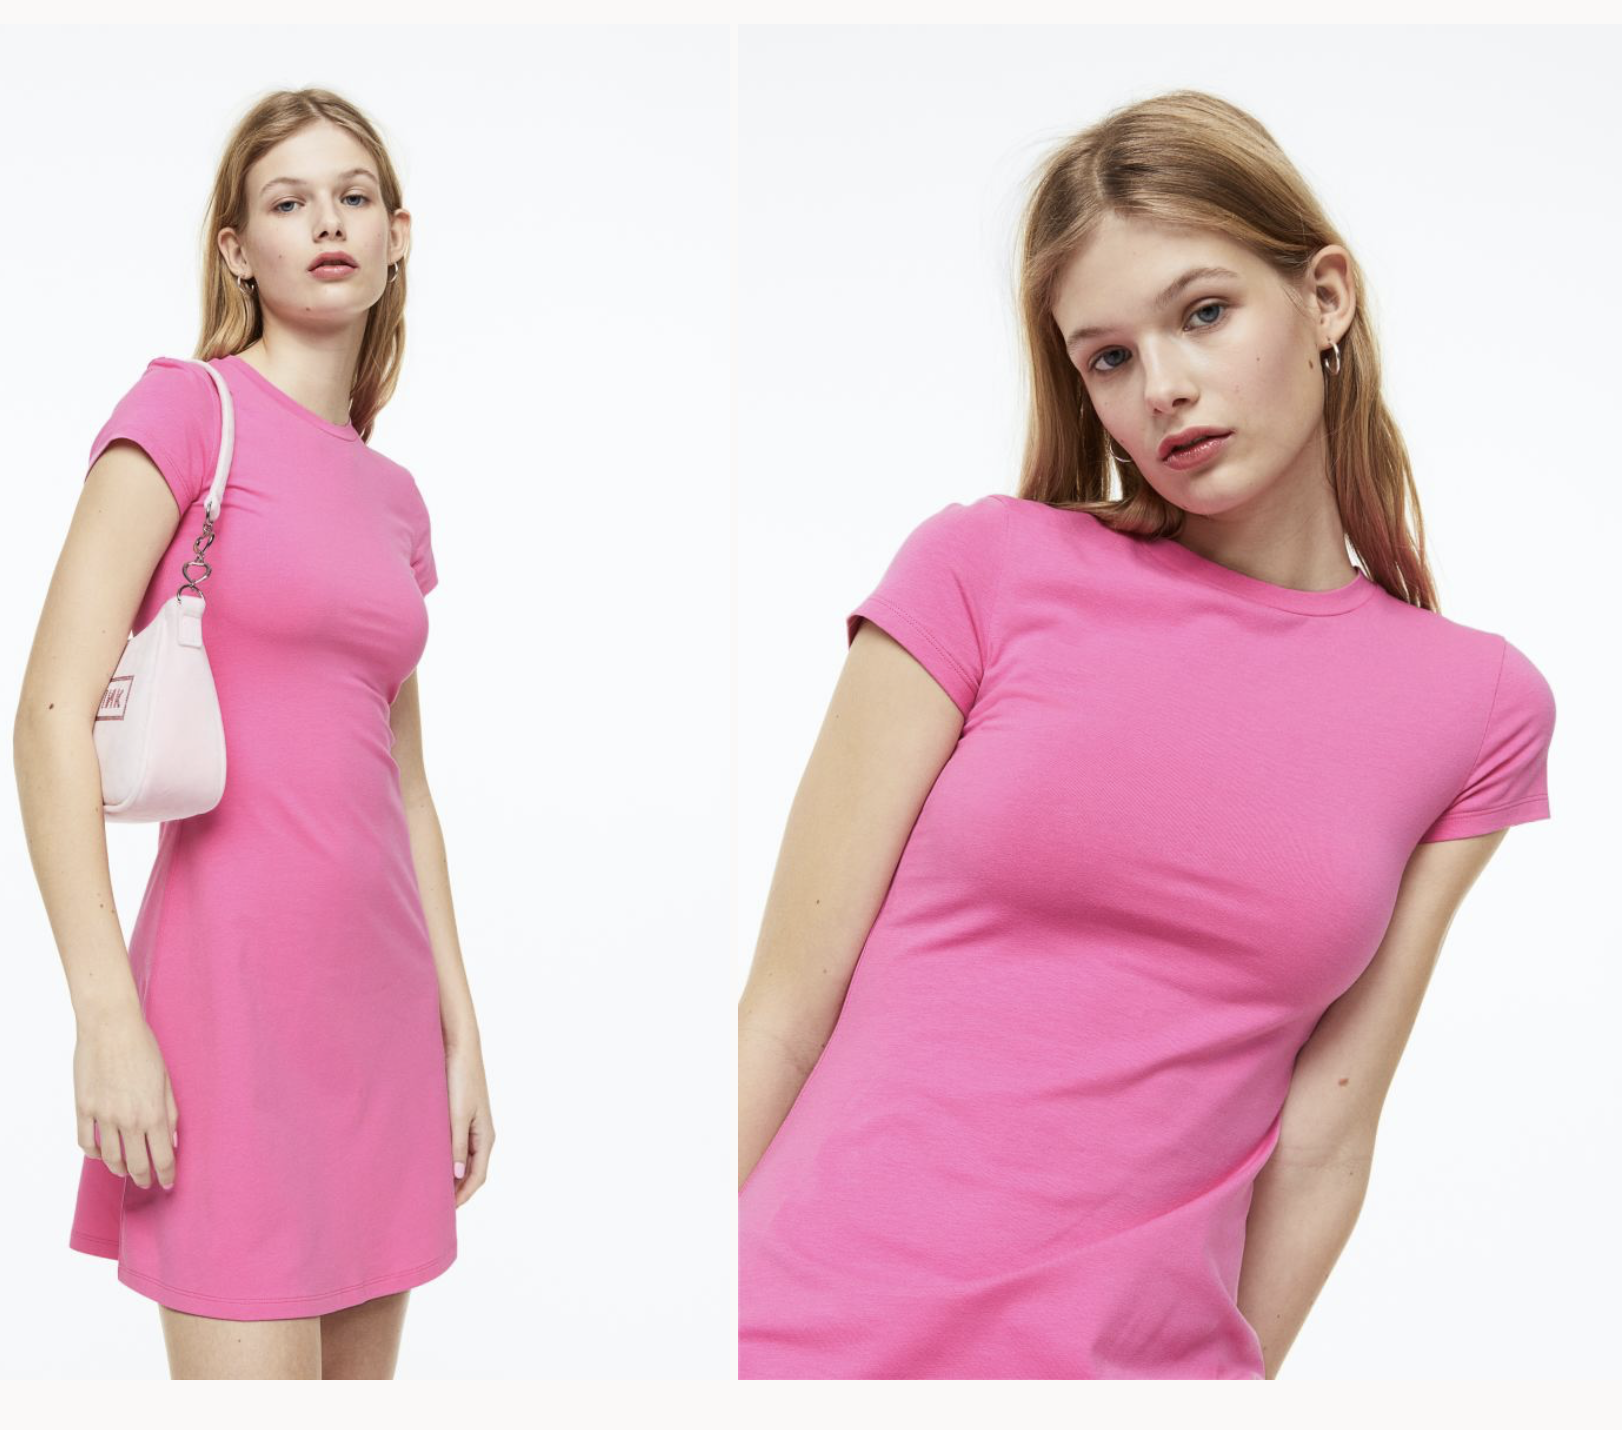 10 mẫu váy liền xinh yêu lại dưới 500.000 VNĐ bạn có thể mua được ở H&M - Ảnh 3.